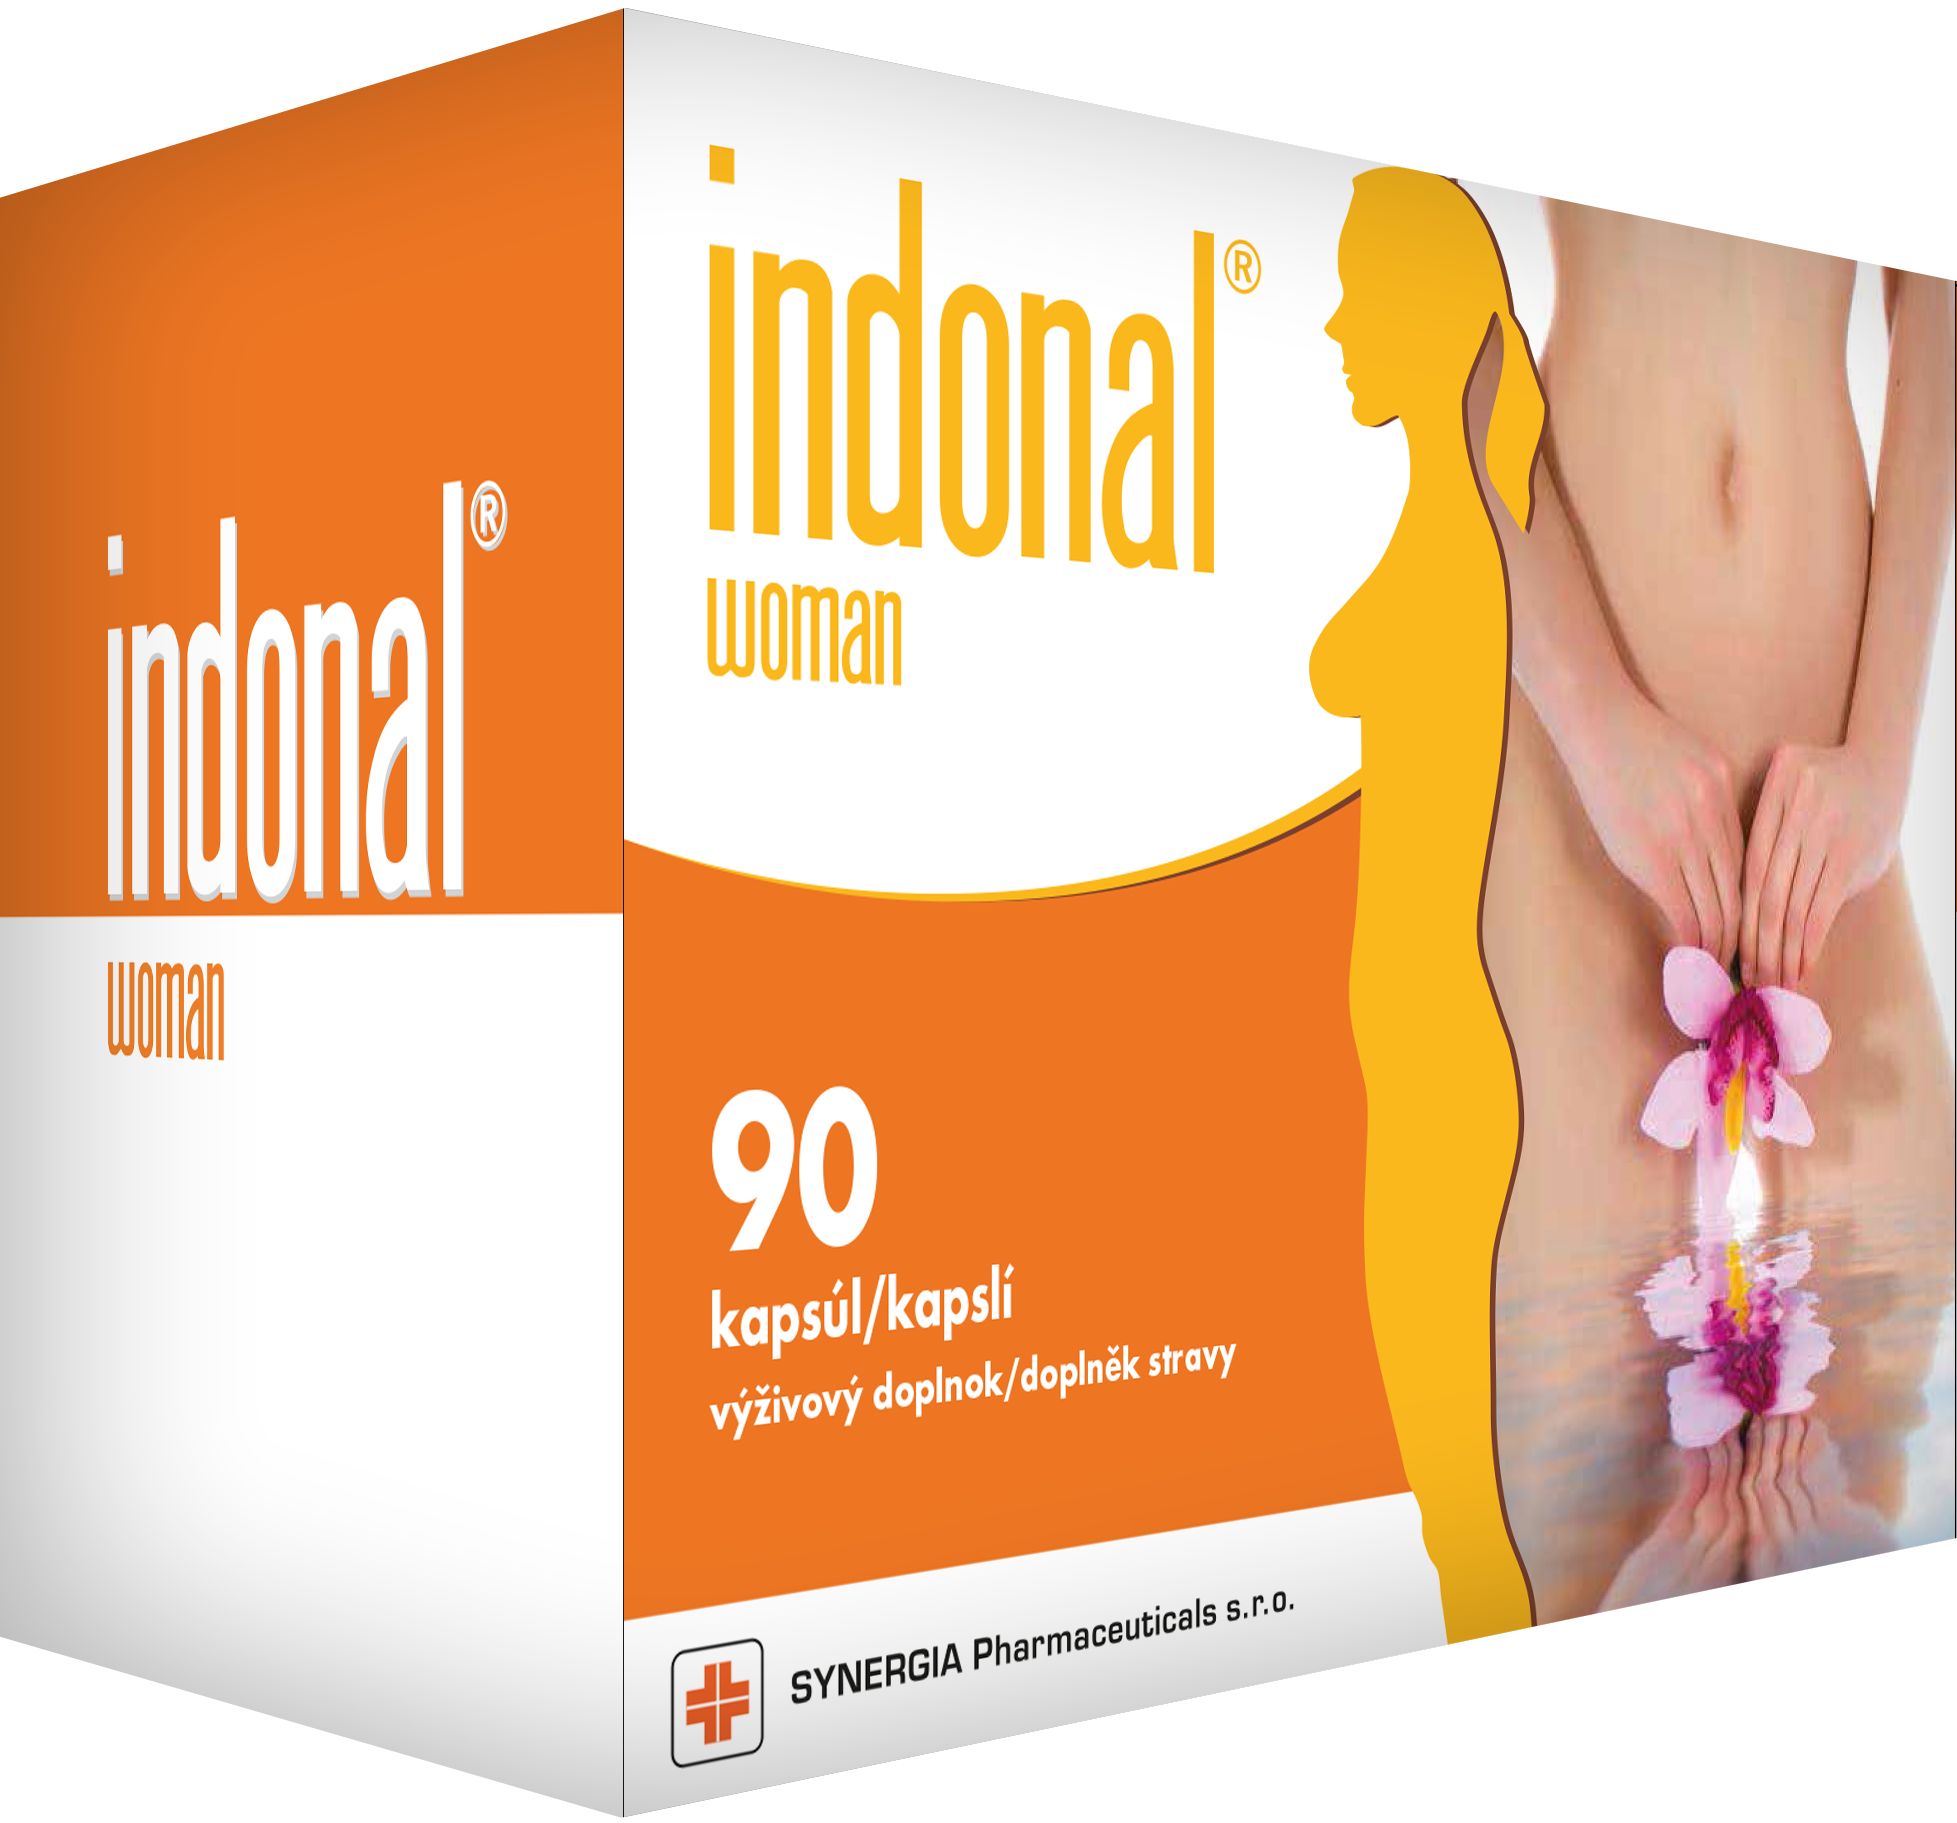 Indonal Woman 90 kapslí Indonal